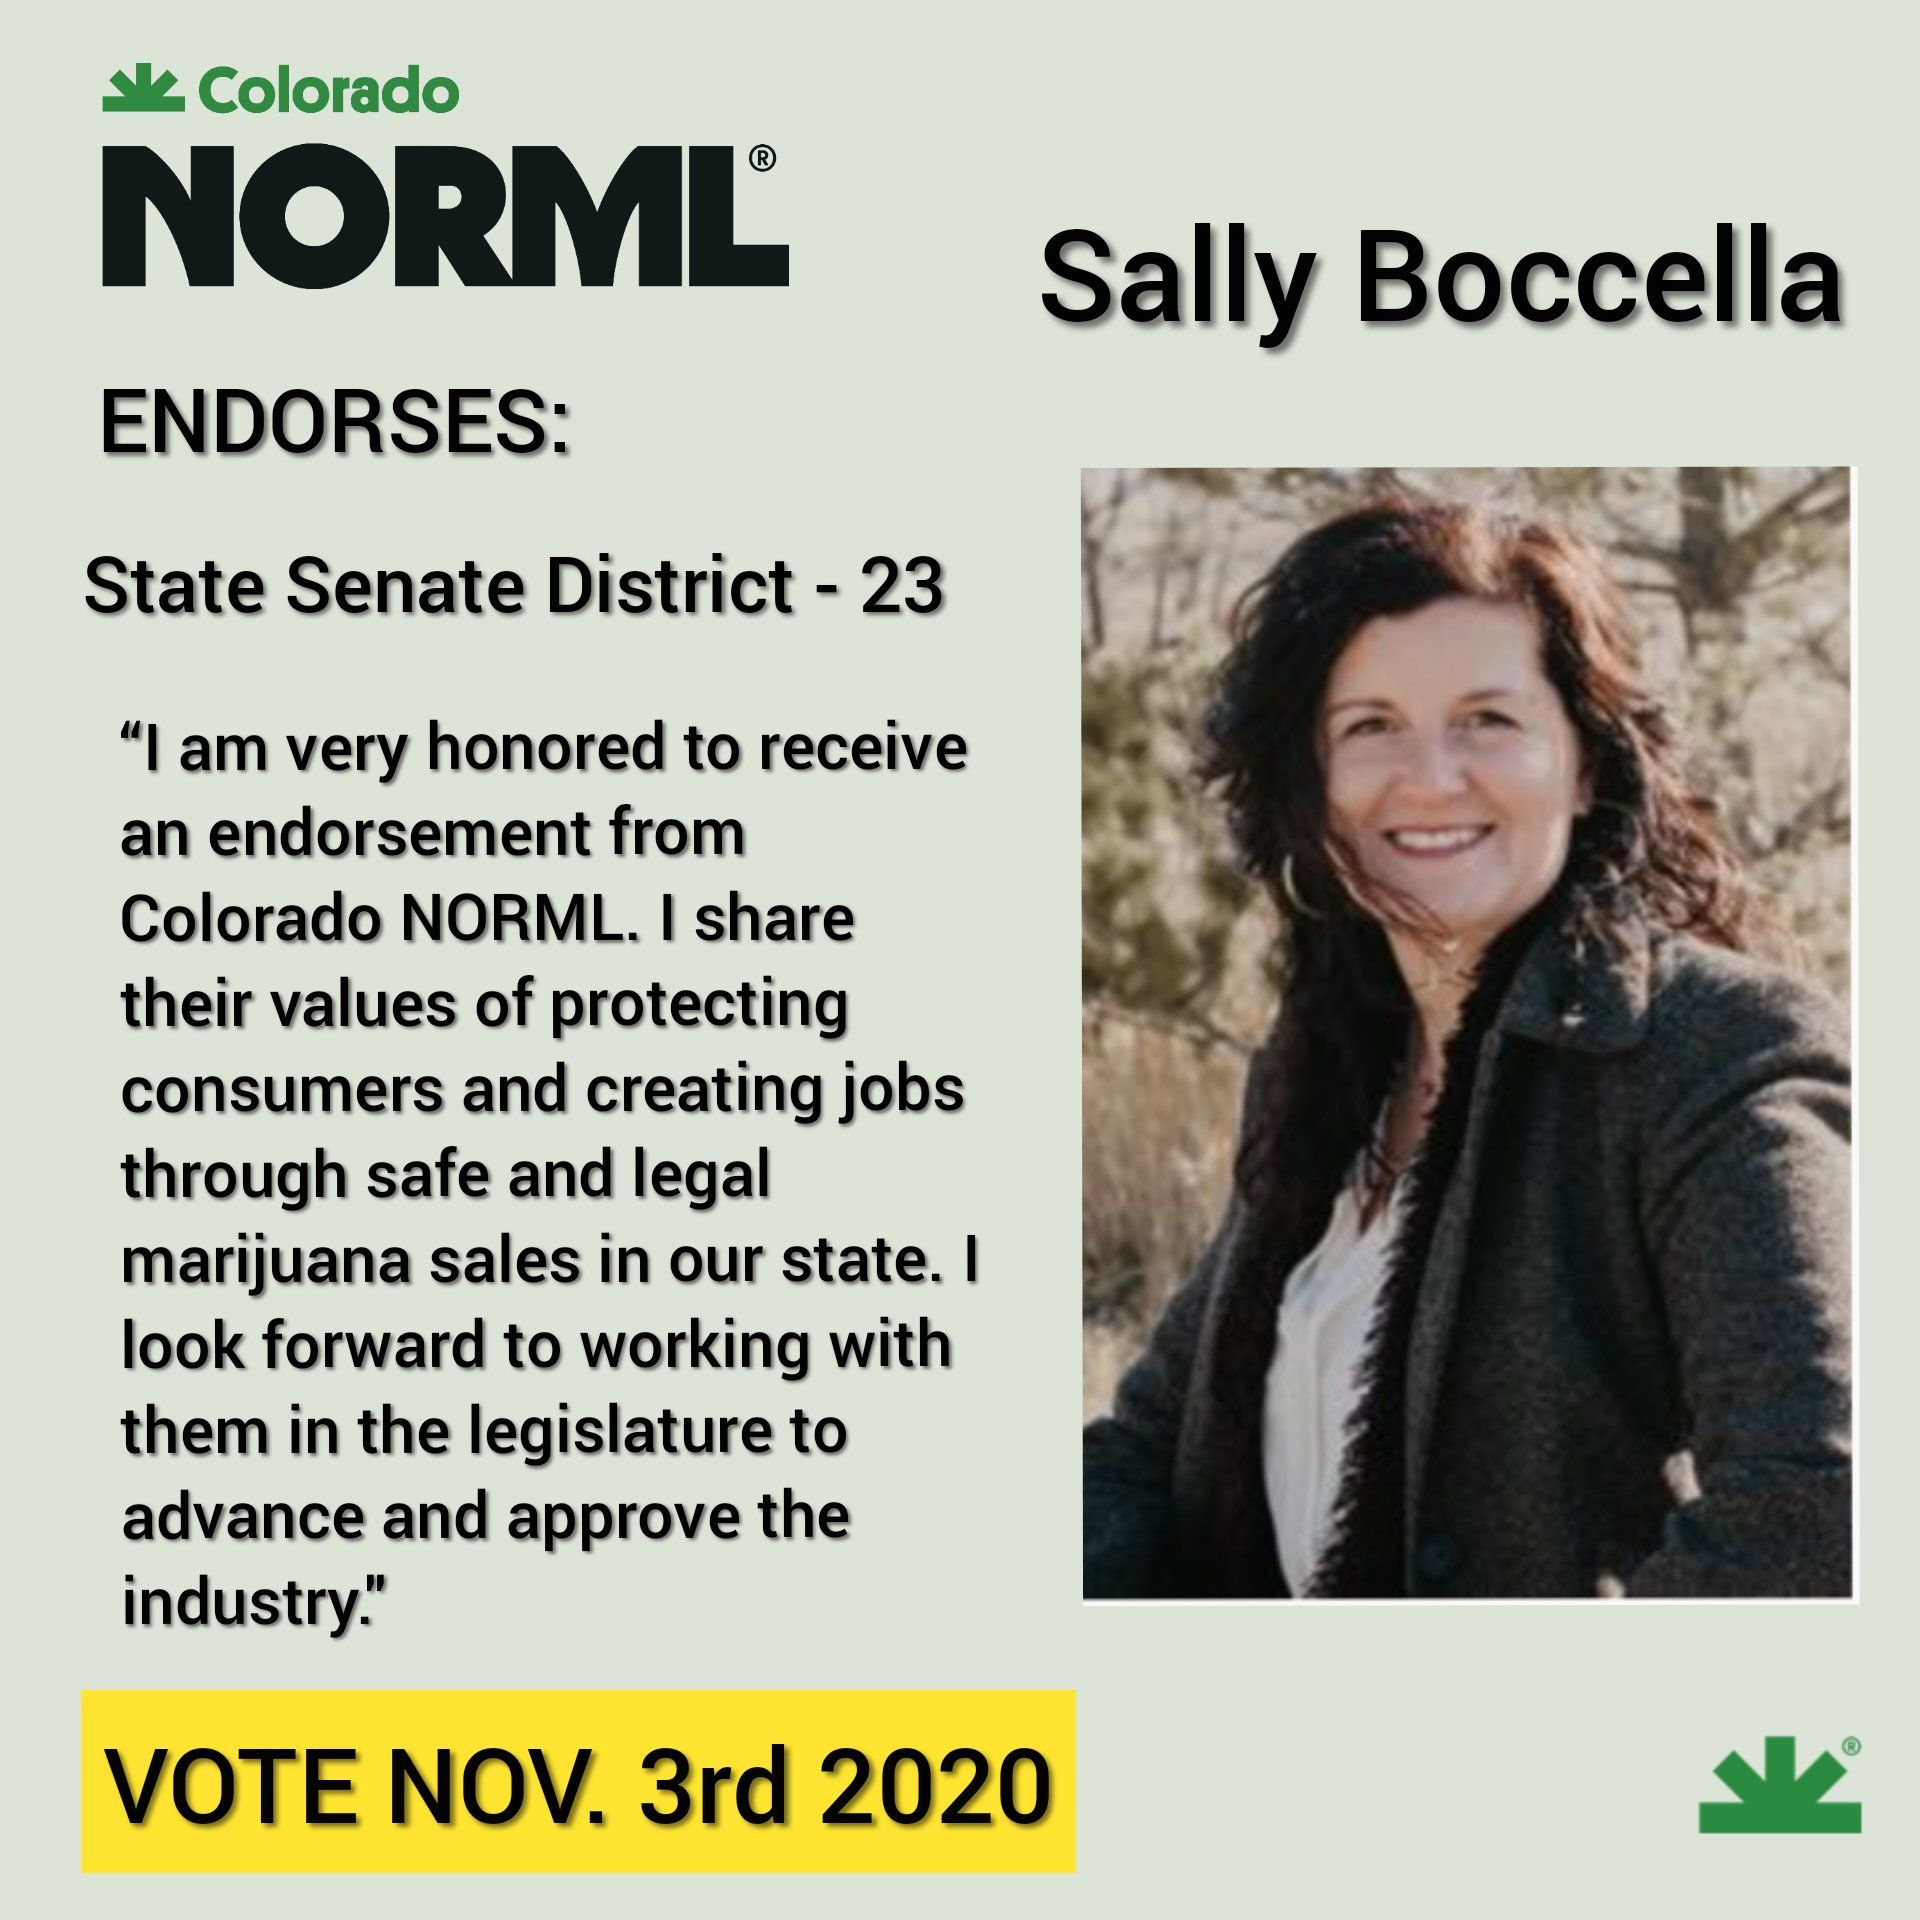 Colorado NORML endorses Sally Boccella for Colorado